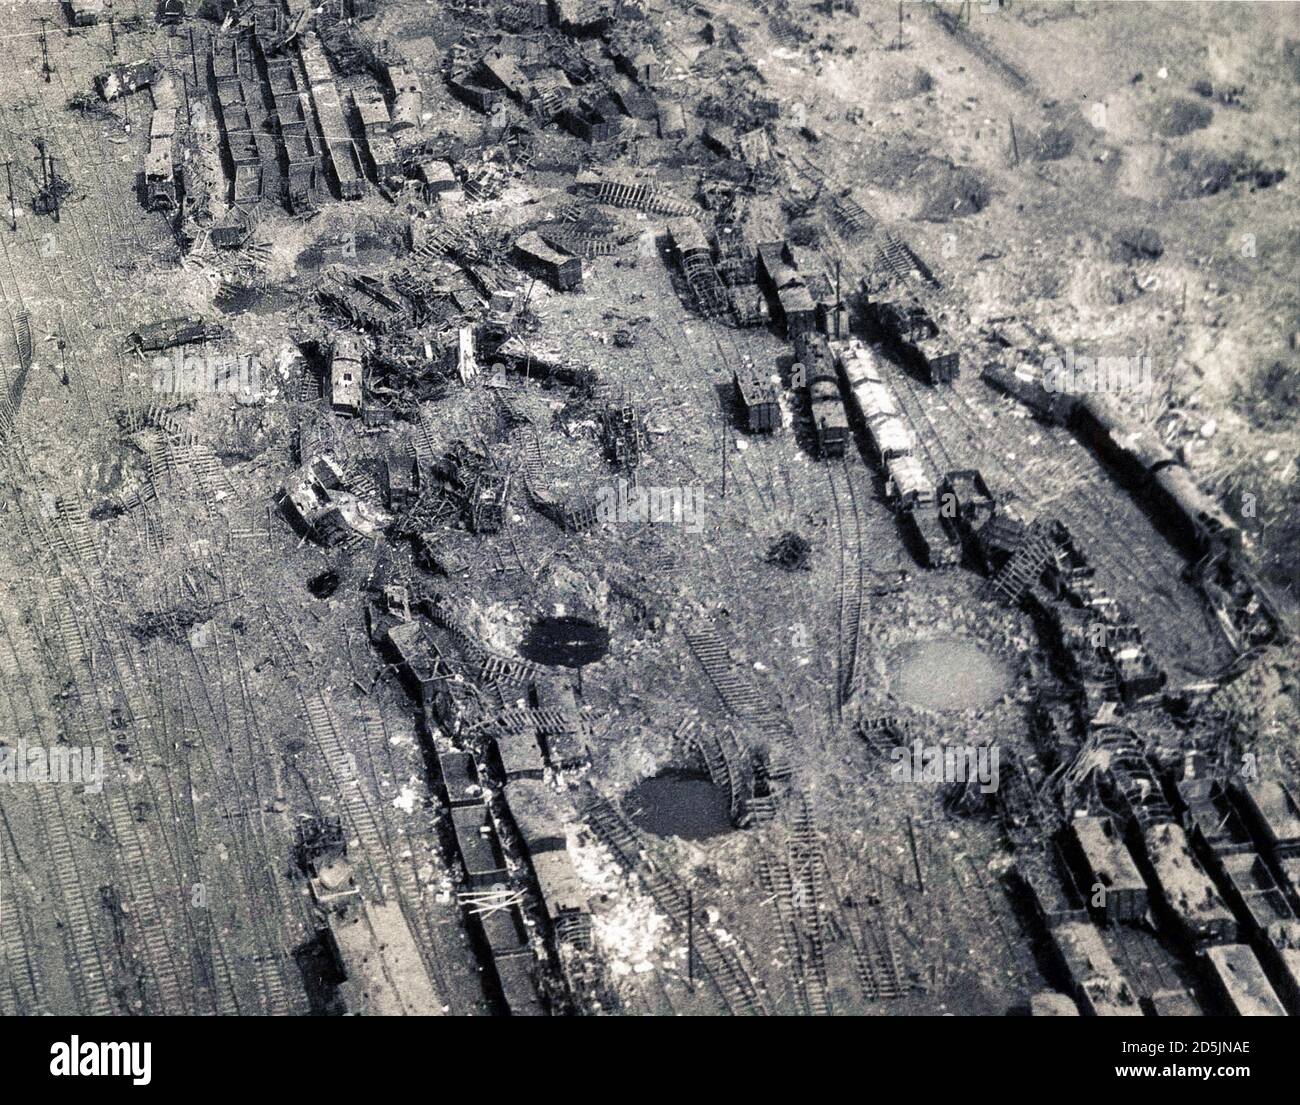 El cruce ferroviario en la ciudad de Limburgo (Alemania), destruido como resultado del bombardeo de bombarderos ligeros y medianos de la 9ª División Aérea de t. Foto de stock